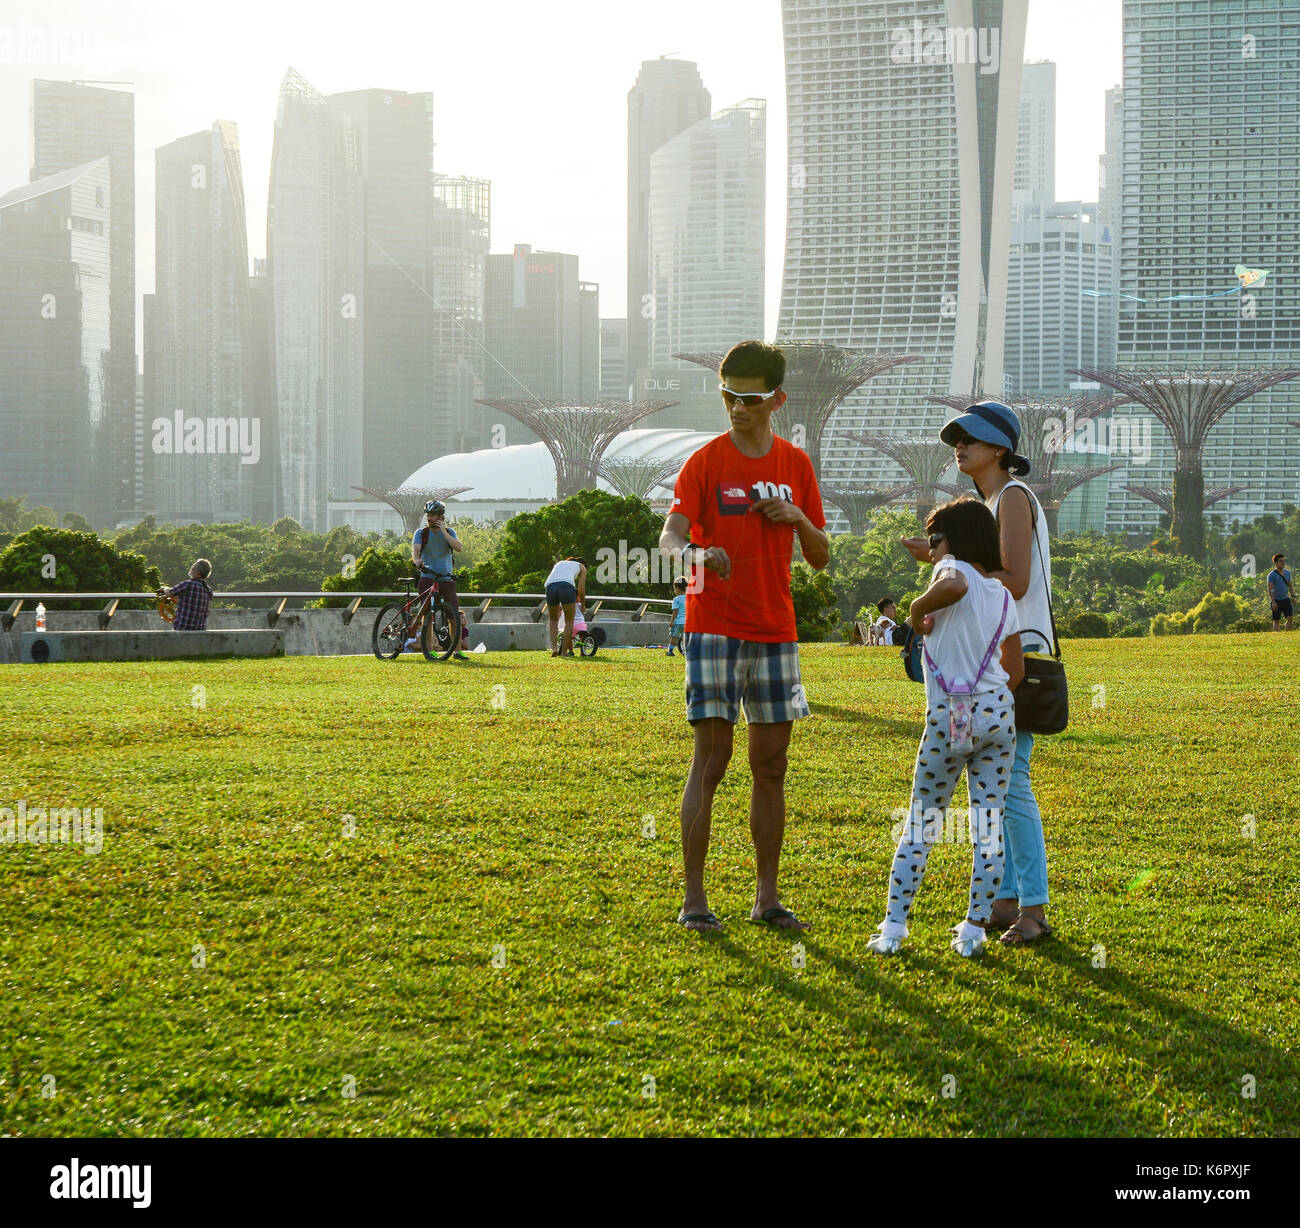 Singapur - Mar 12, 2016. Eine Familie spielen im Green Park in Singapur. Ausgewachsene Bäume sind eine natürliche Erbe von Singapur und dienen als wichtige gre Stockfoto